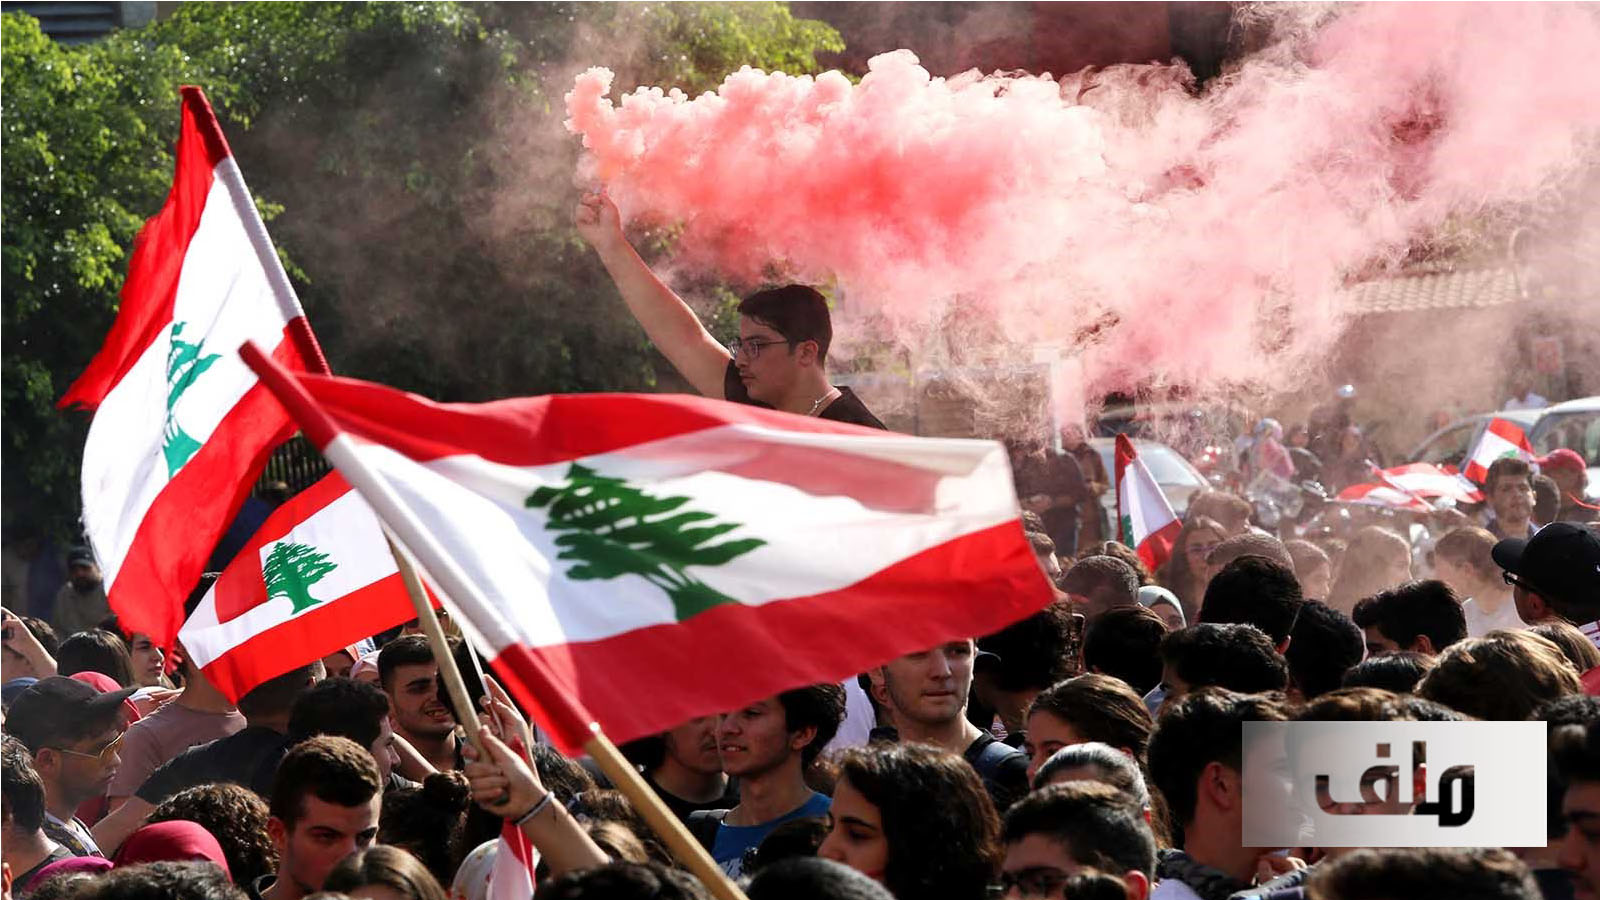 2019 سنة لبنان الكارثية.. متوجة بالثورة